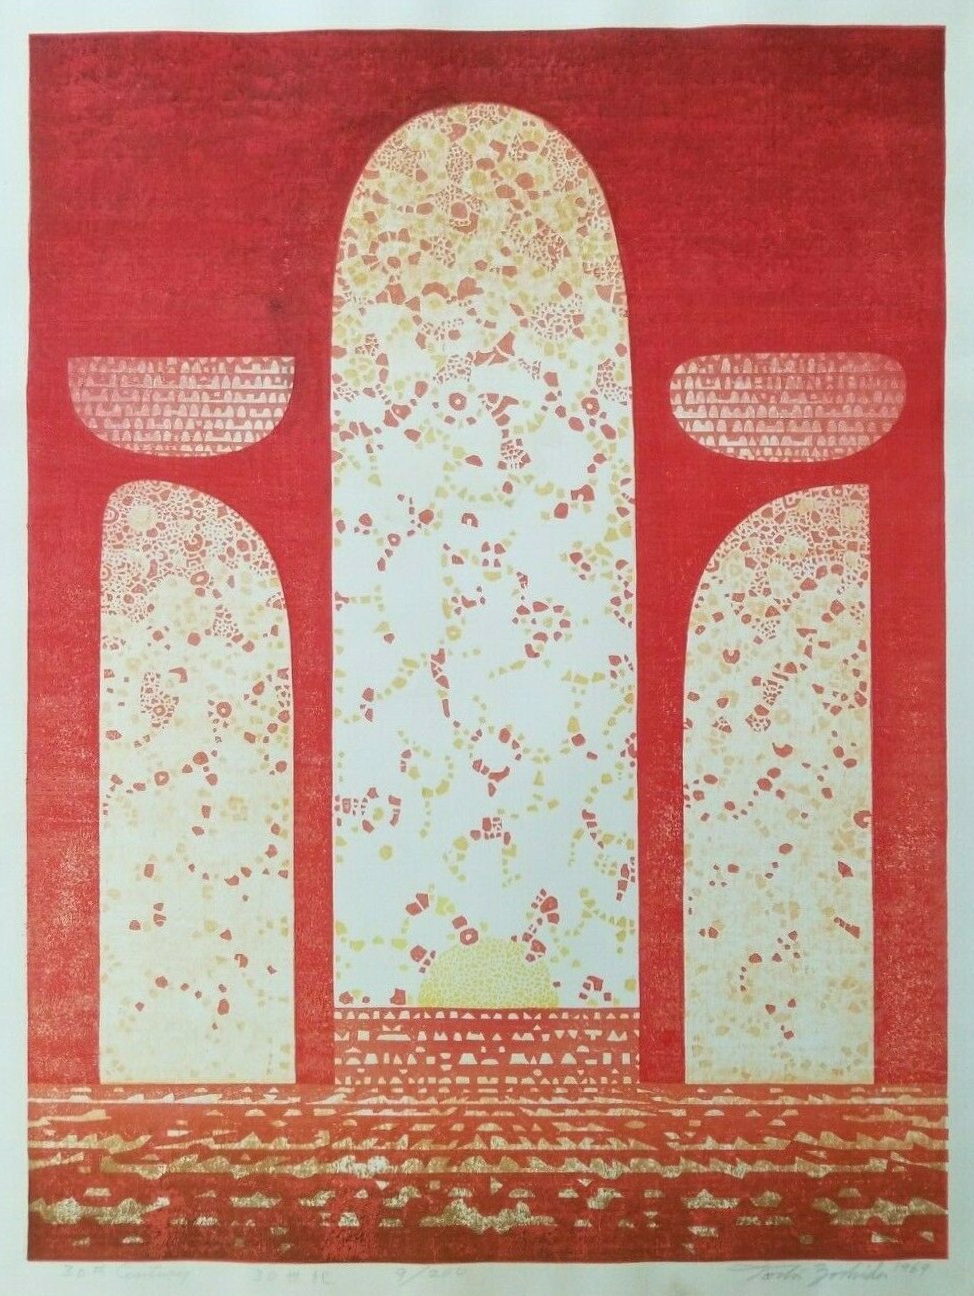 Toshi Yoshida “30th Century” 1969 woodblock print